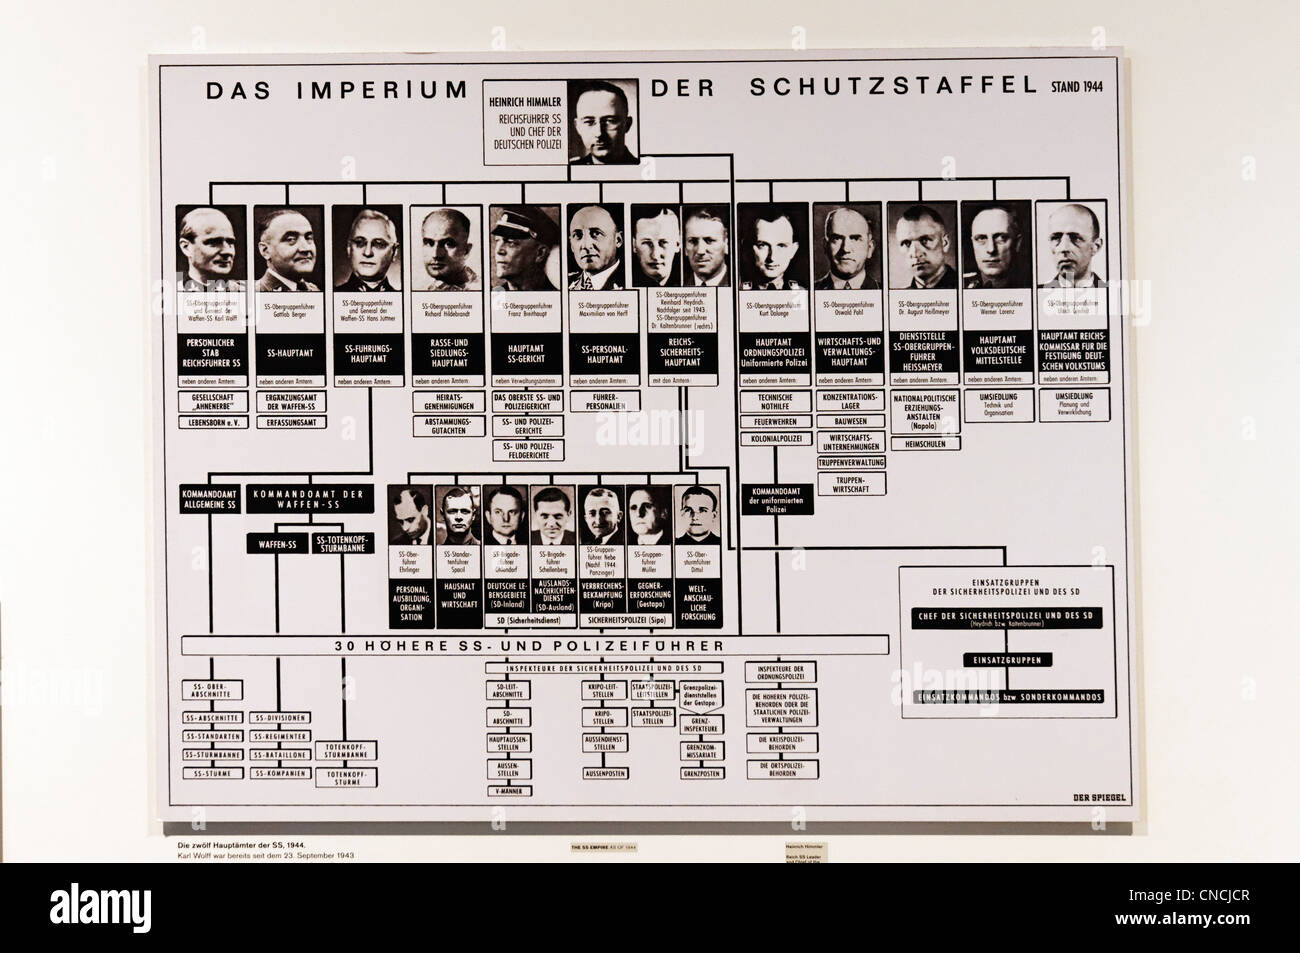 Einen Stammbaum der SS-Befehl Struktur mit Heinrich Himmler an der Oberseite Stockfoto